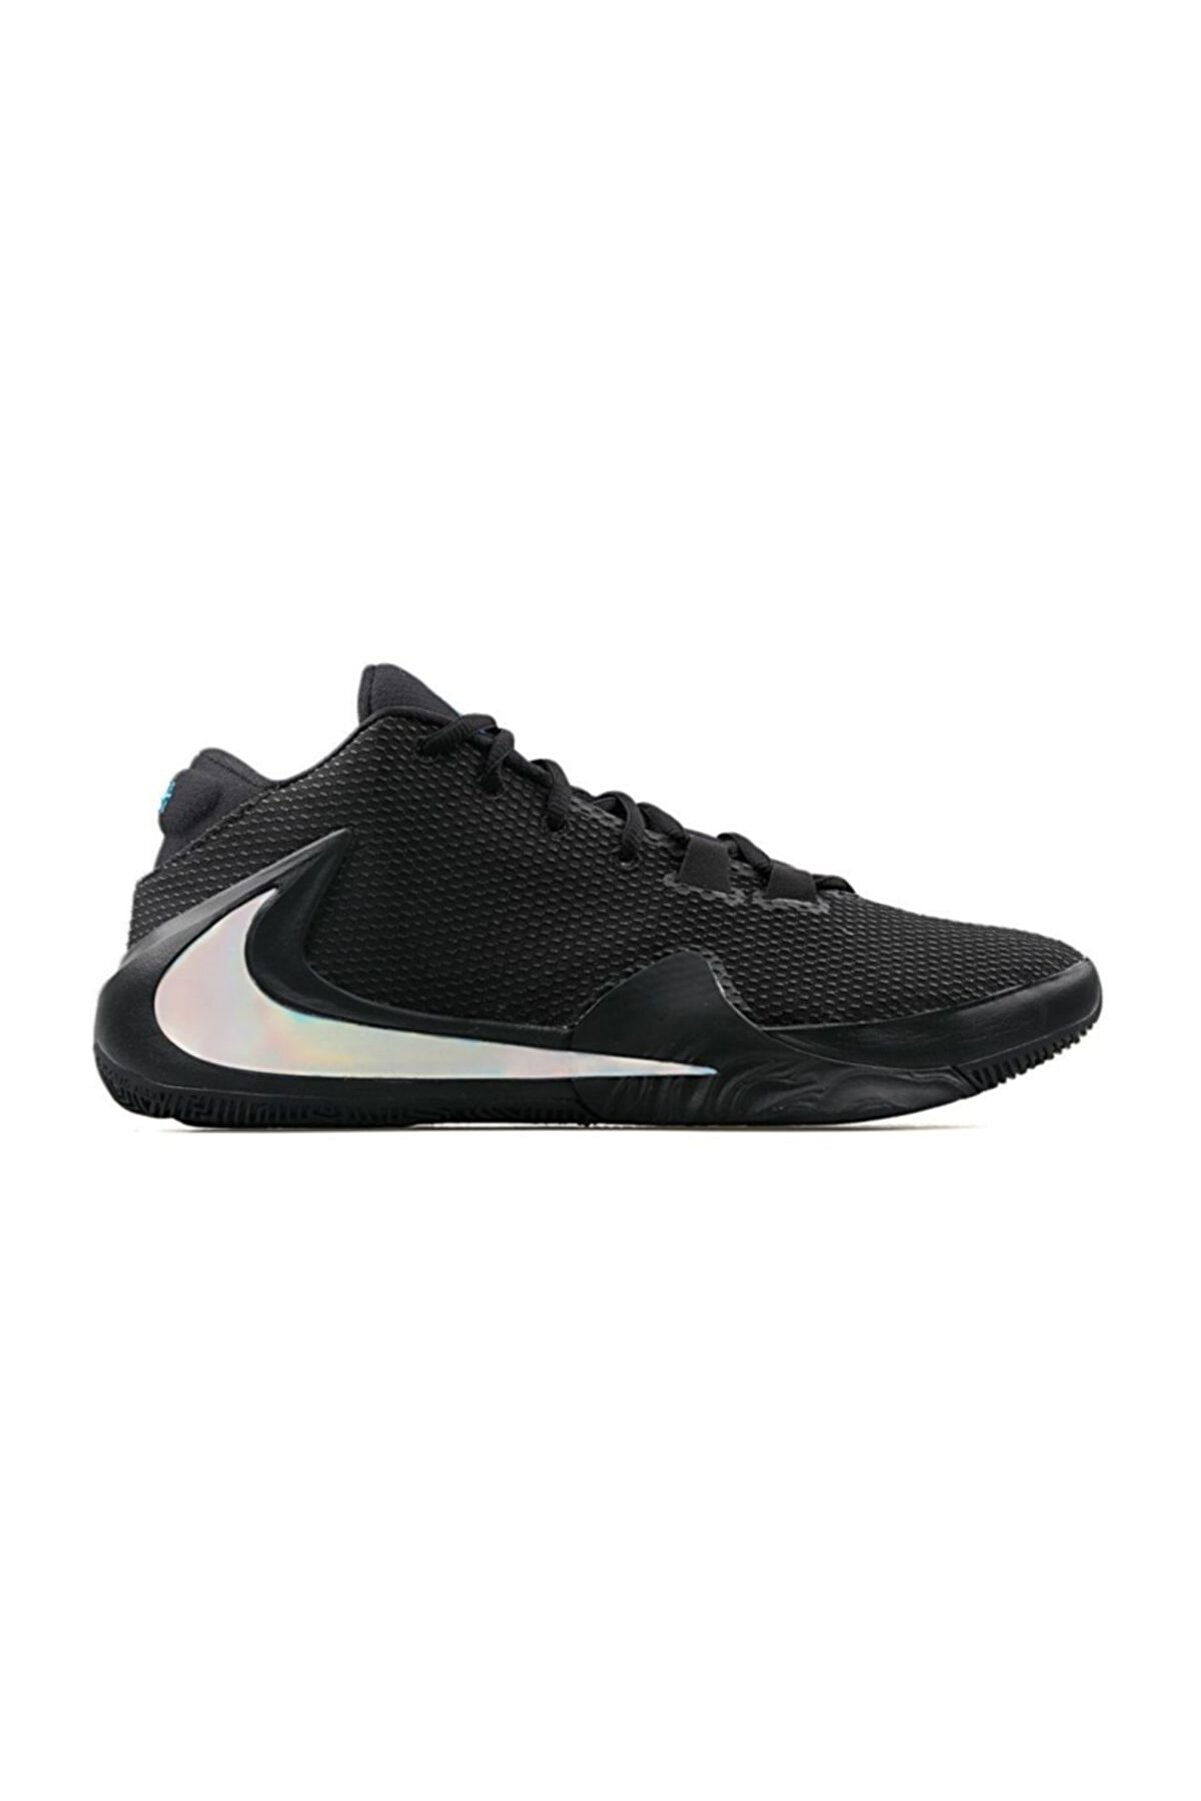 Nike Erkek Basketbol Ayakkabısı Zoom Freak 1 Bq5422-004